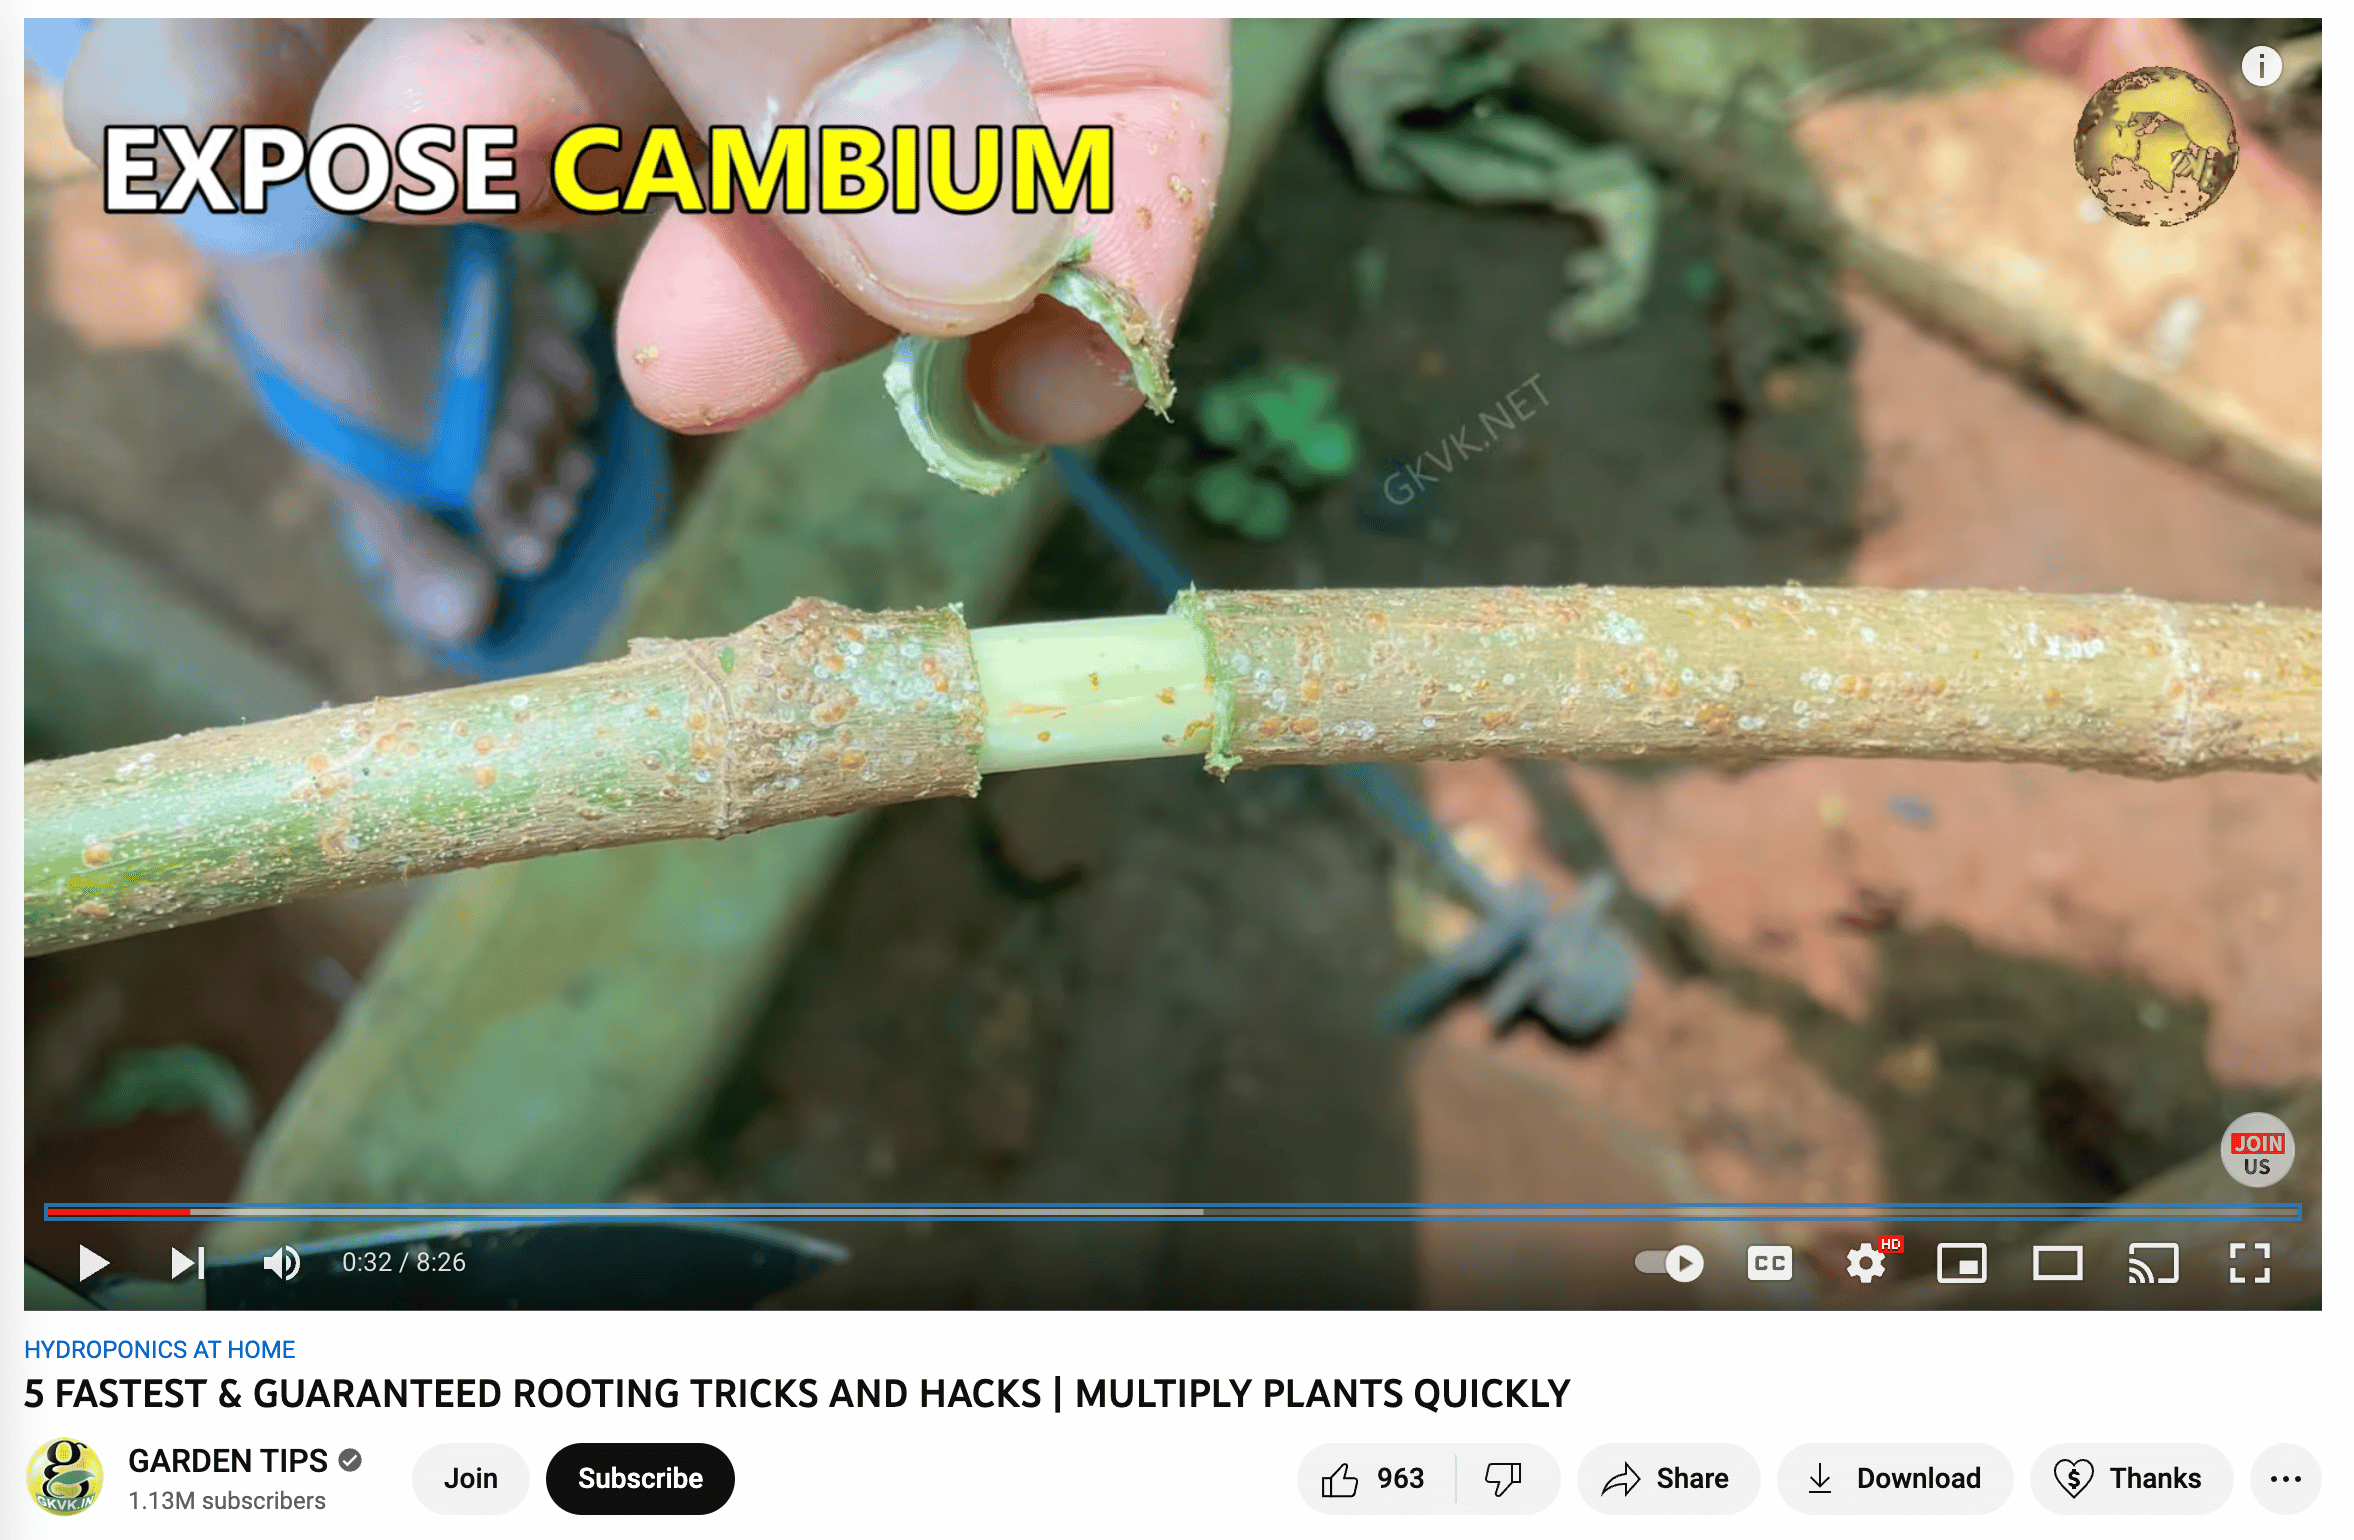 vidéo de la chaîne youtube de jardinage montrant comment exposer le cambium